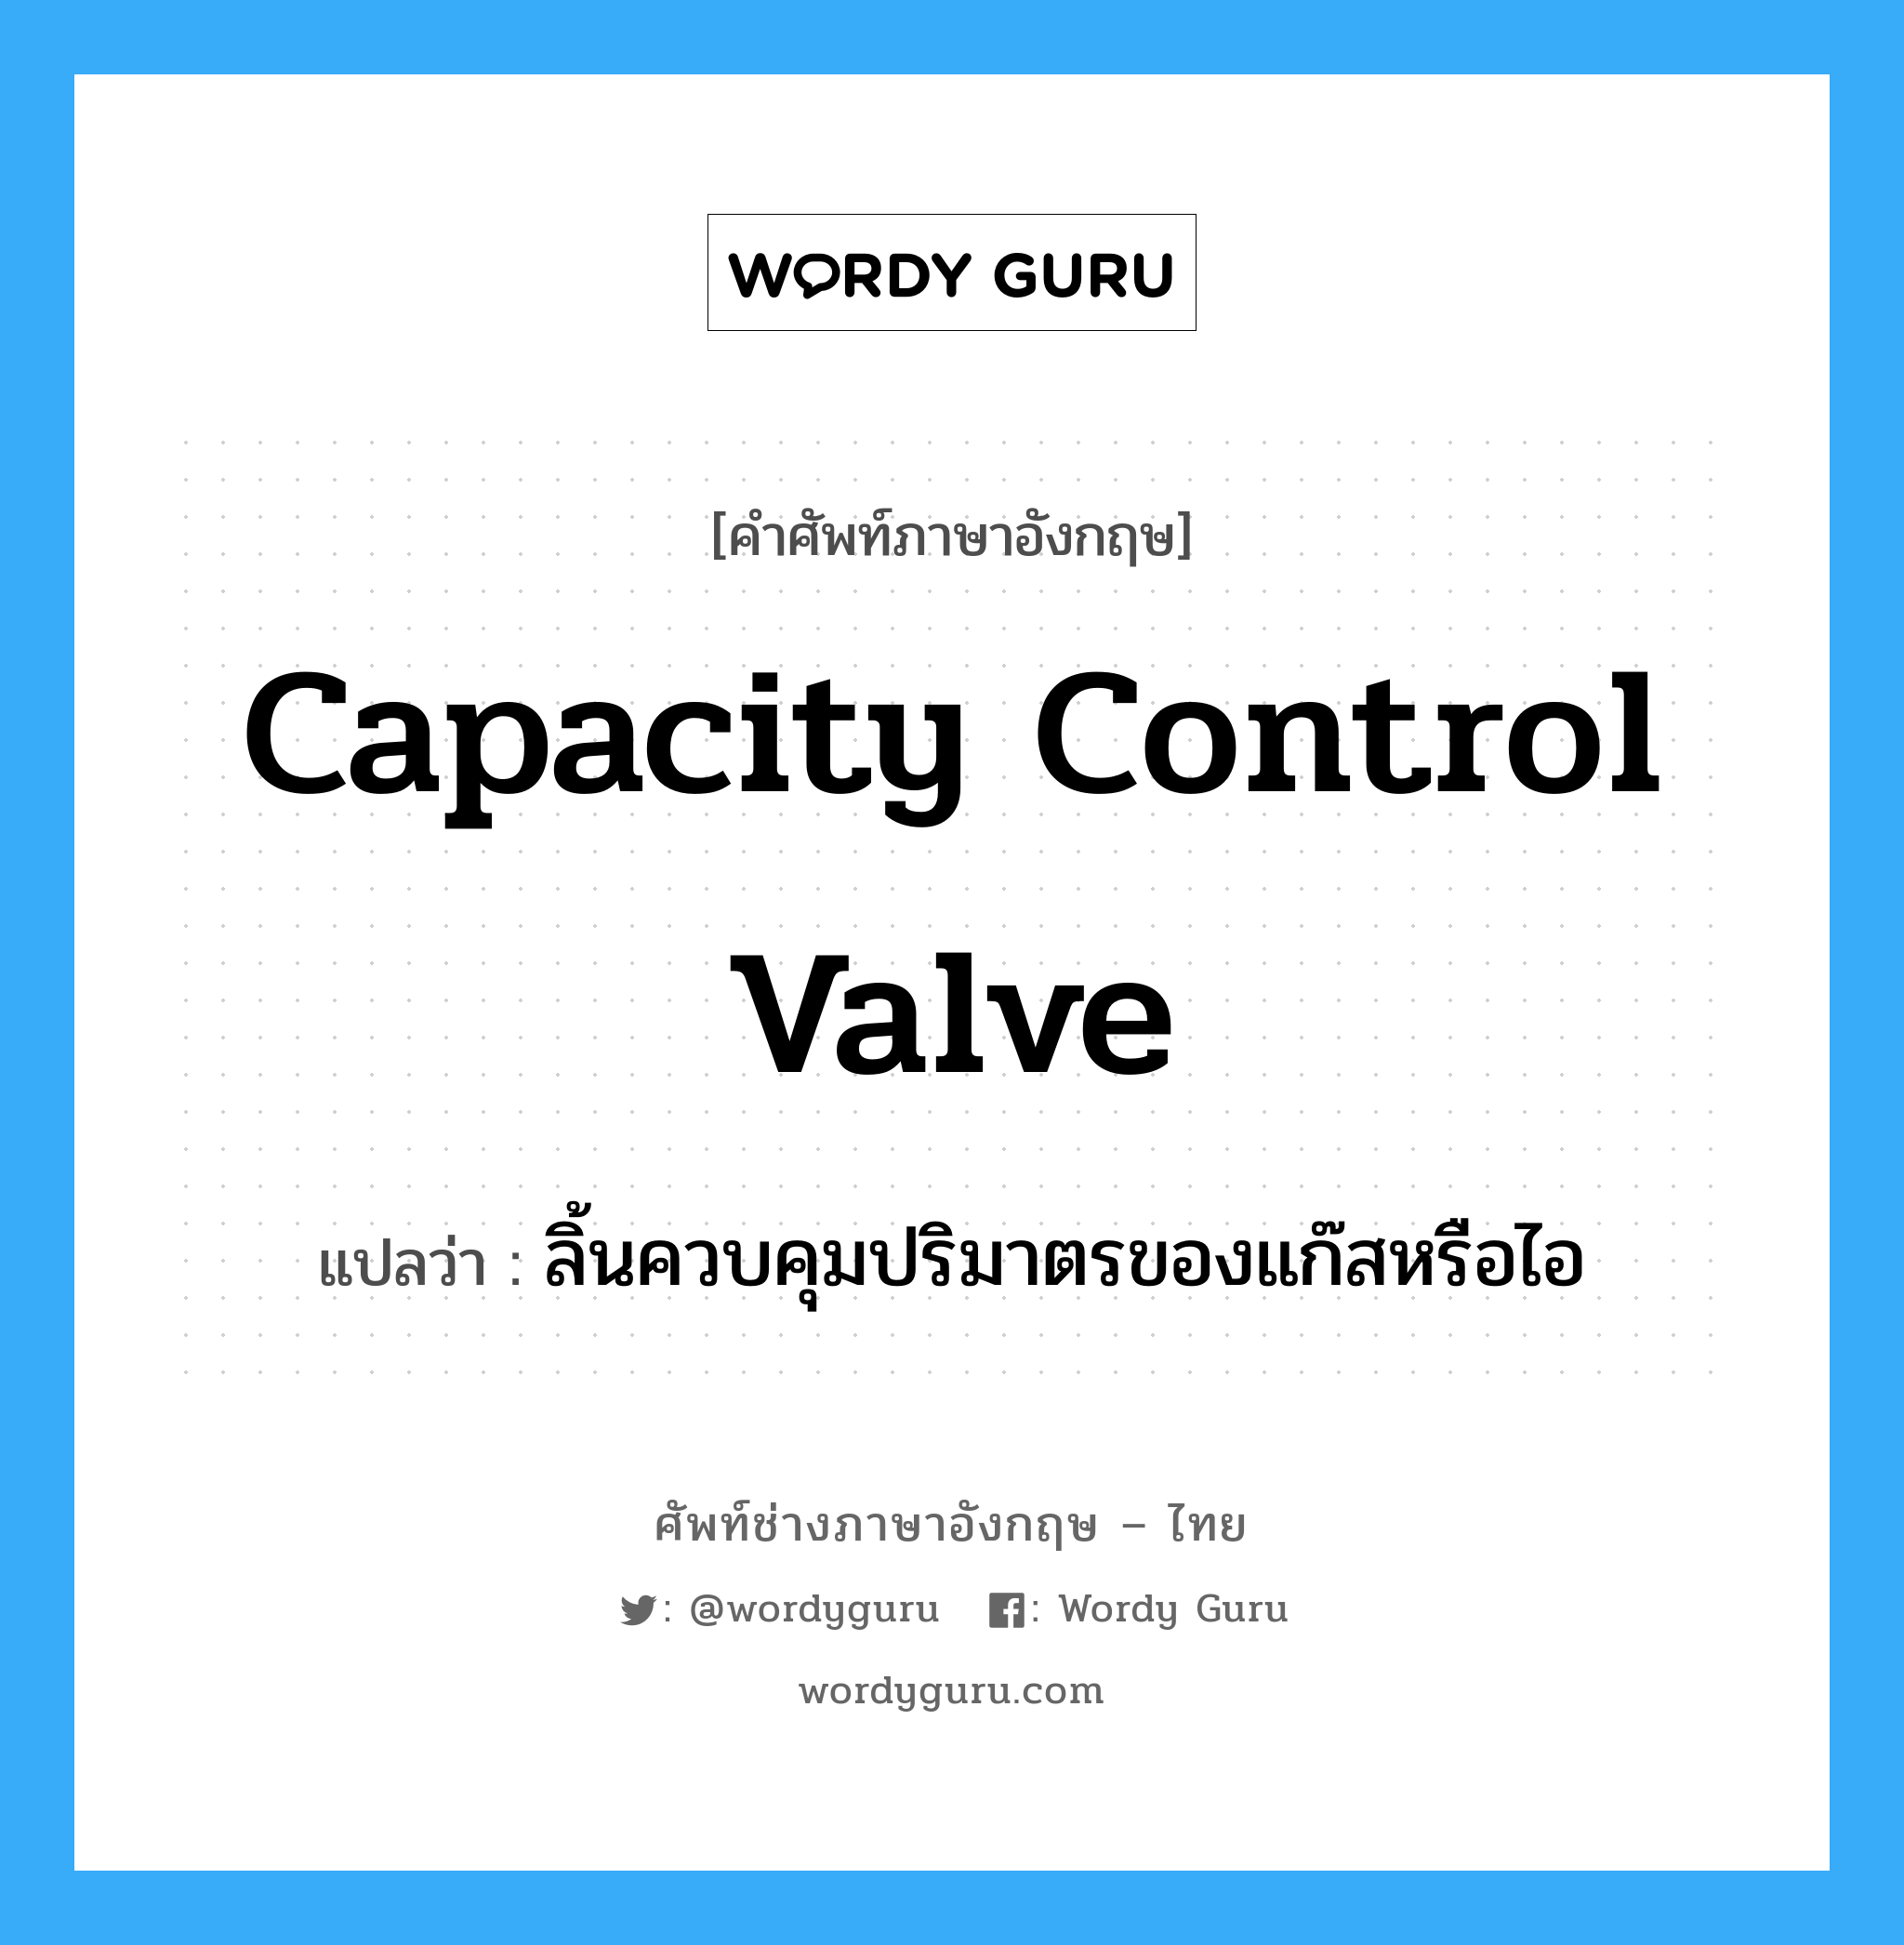 ลิ้นควบคุมปริมาตรของแก๊สหรือไอ ภาษาอังกฤษ?, คำศัพท์ช่างภาษาอังกฤษ - ไทย ลิ้นควบคุมปริมาตรของแก๊สหรือไอ คำศัพท์ภาษาอังกฤษ ลิ้นควบคุมปริมาตรของแก๊สหรือไอ แปลว่า capacity control valve